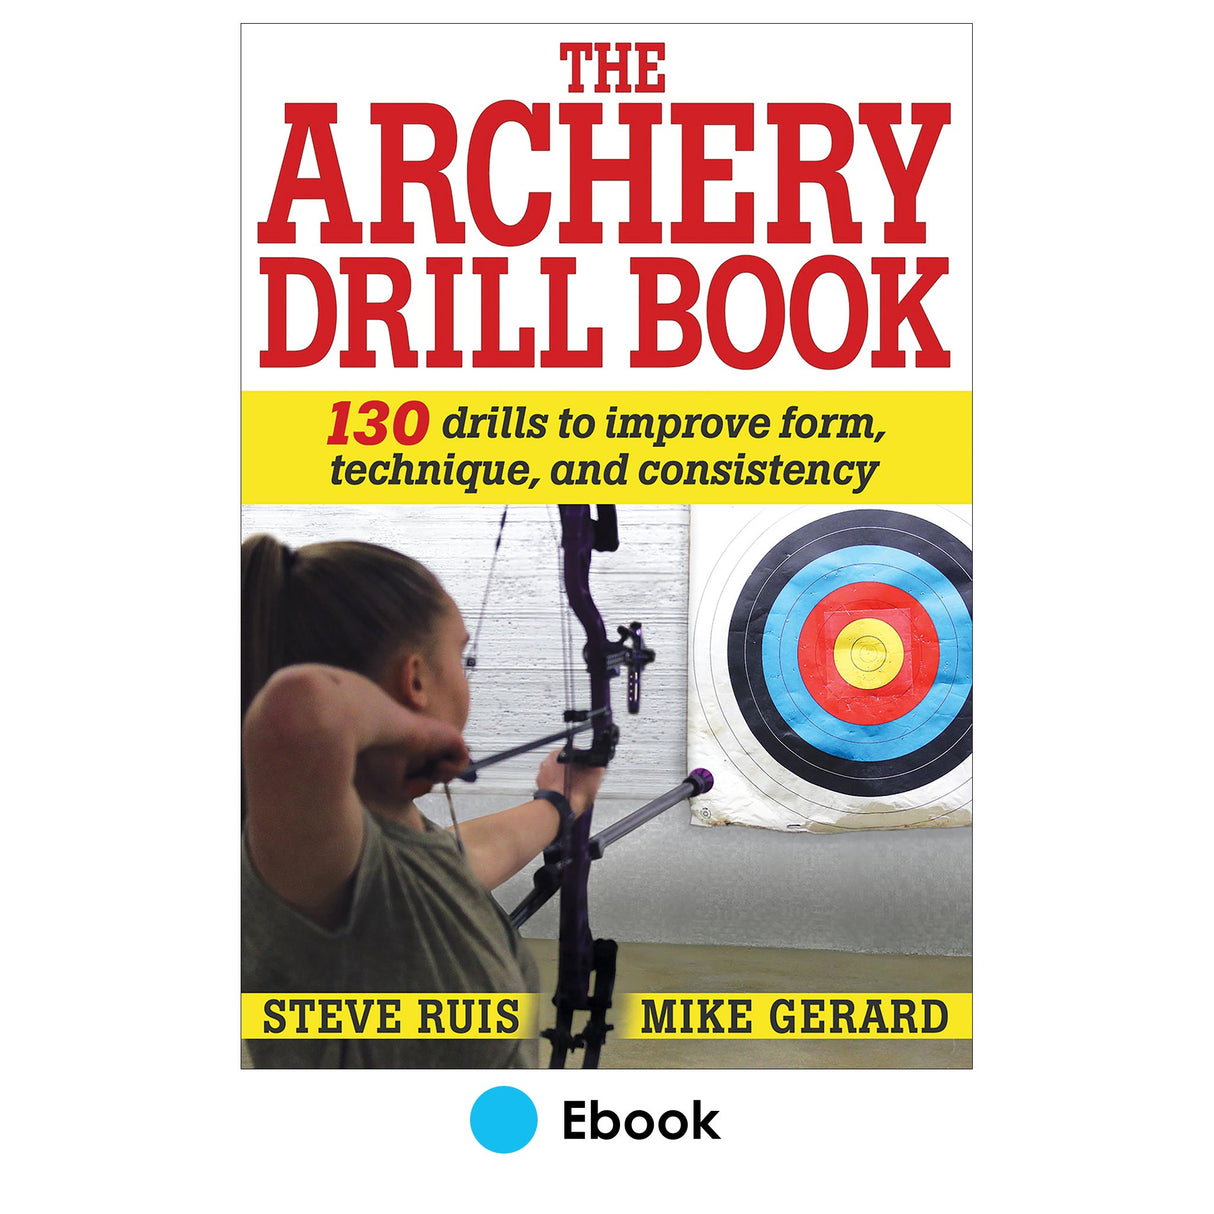 Archery Drill Book epub, The